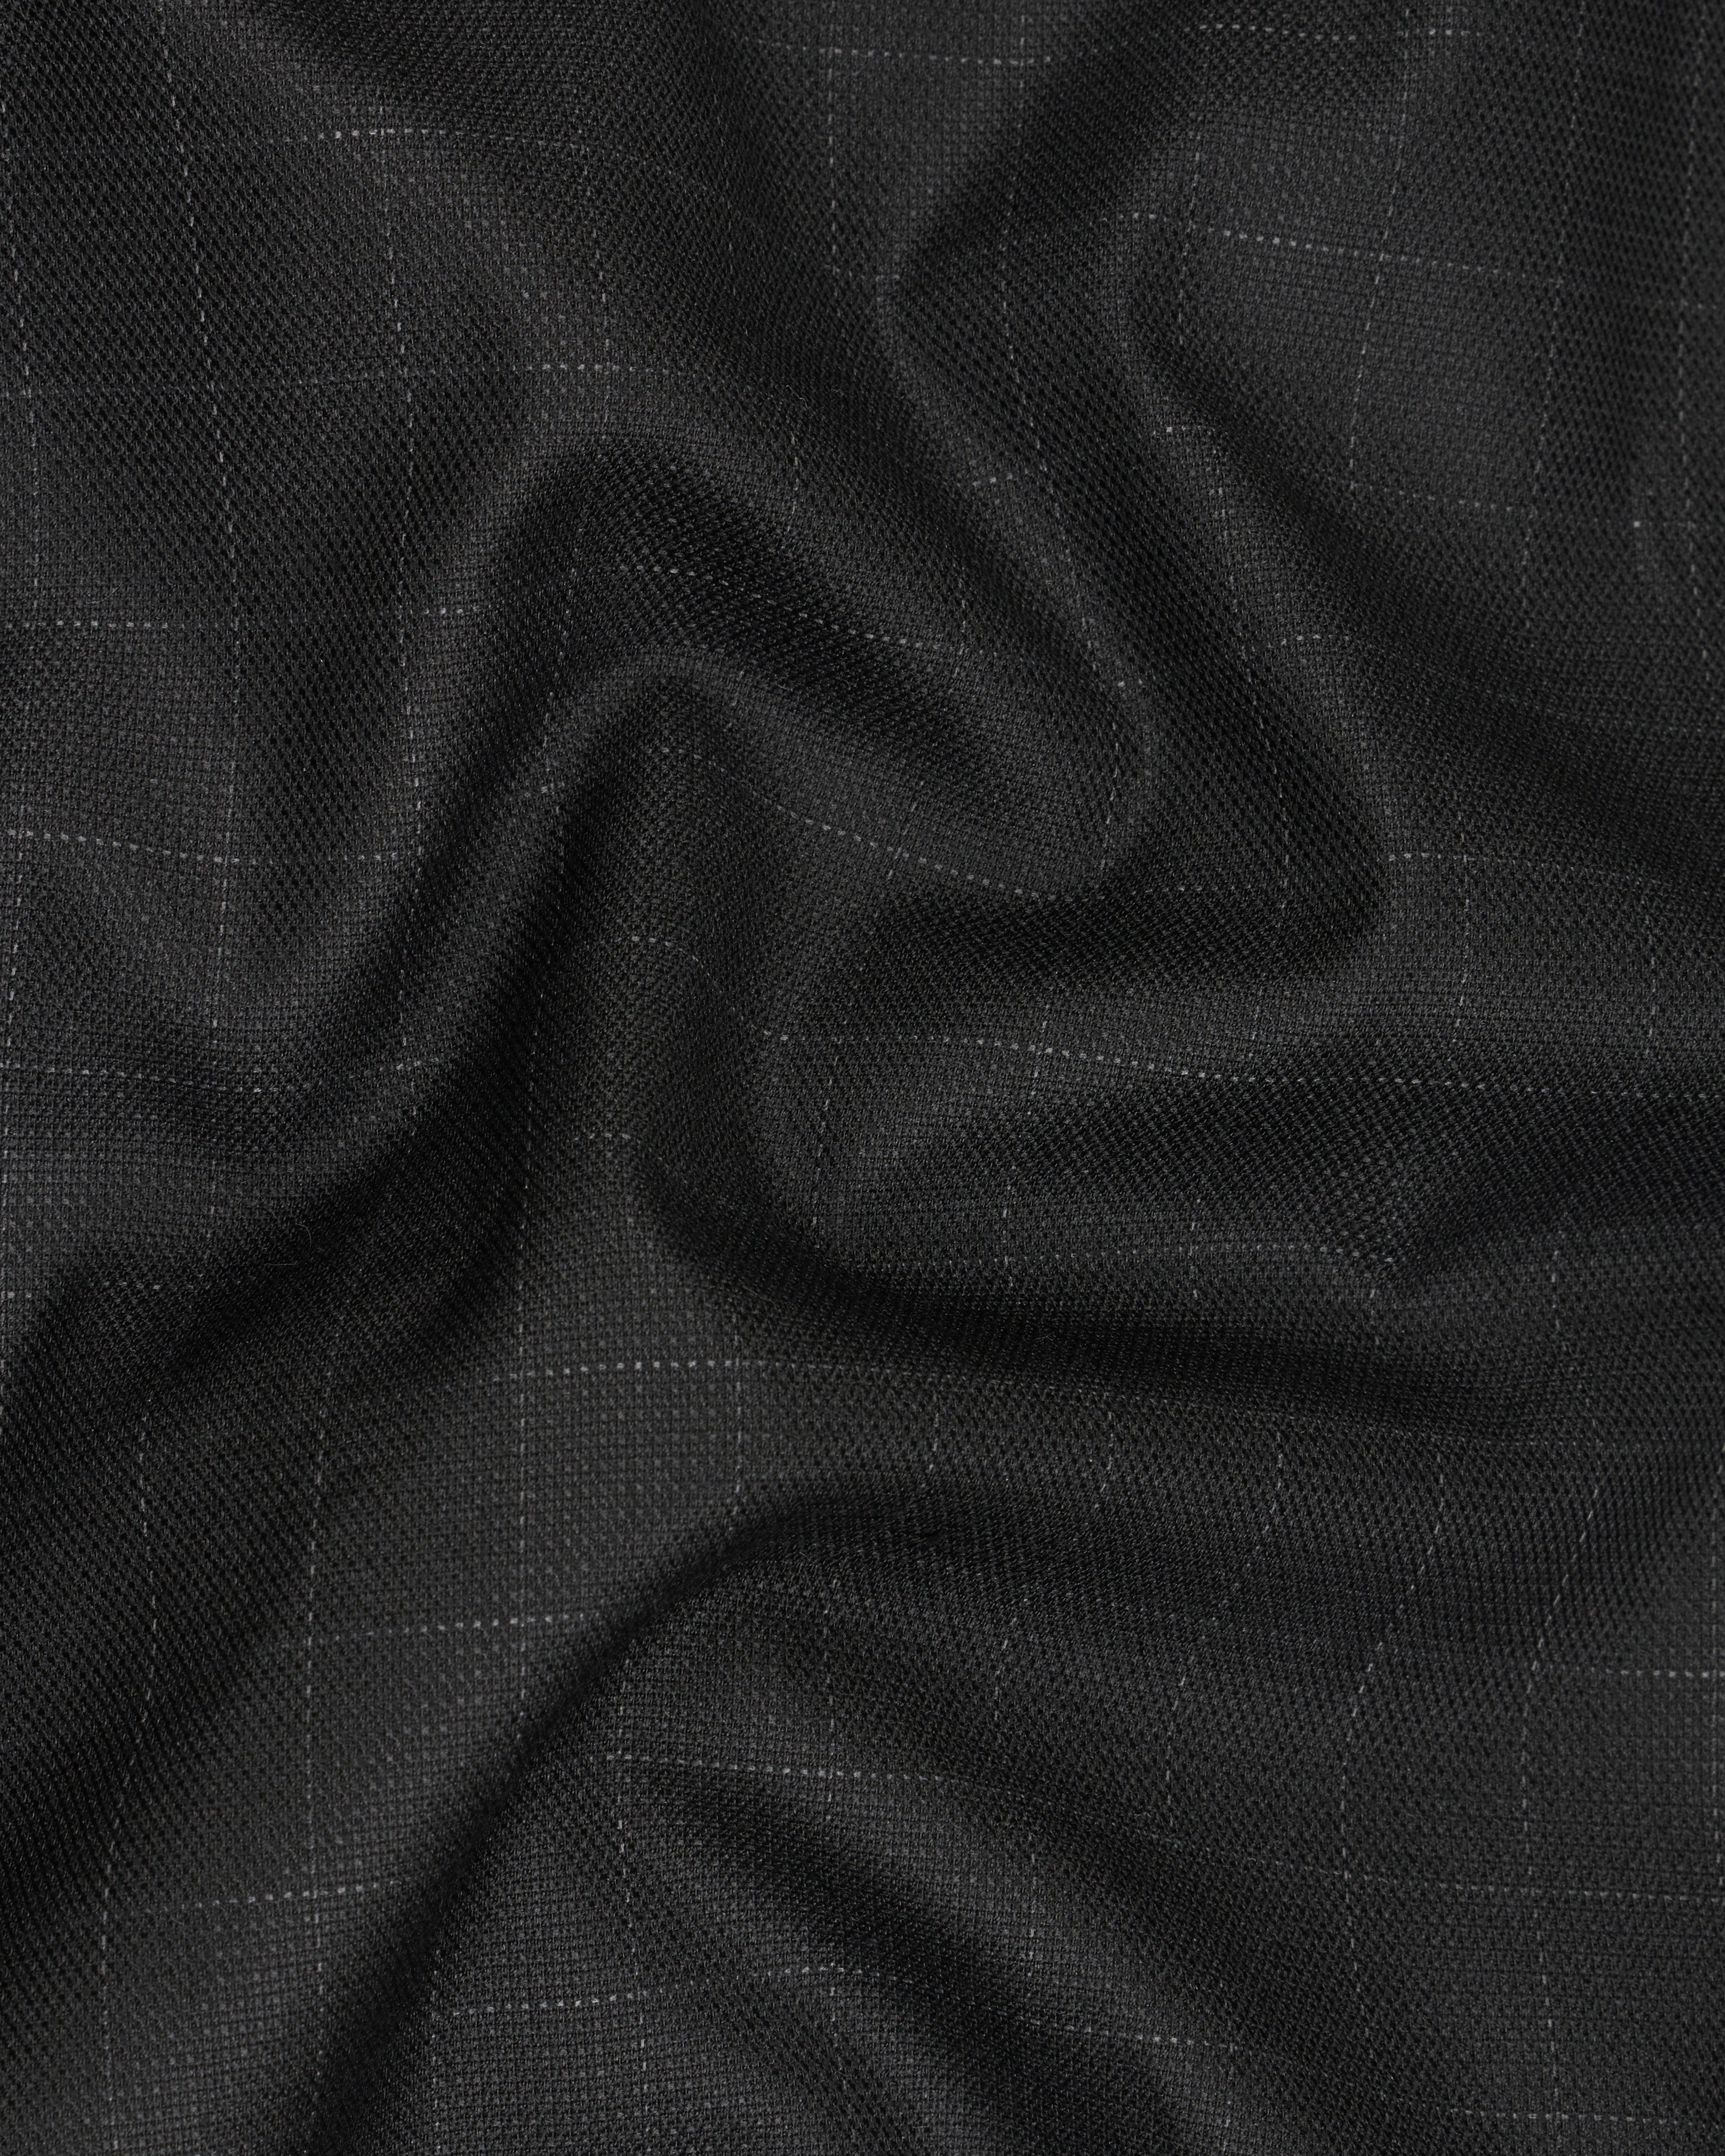 Jade Black with Storm Gray Checkered Waistcoat V2604-36, V2604-38, V2604-40, V2604-42, V2604-44, V2604-46, V2604-48, V2604-50, V2604-52, V2604-54, V2604-56, V2604-58, V2604-60